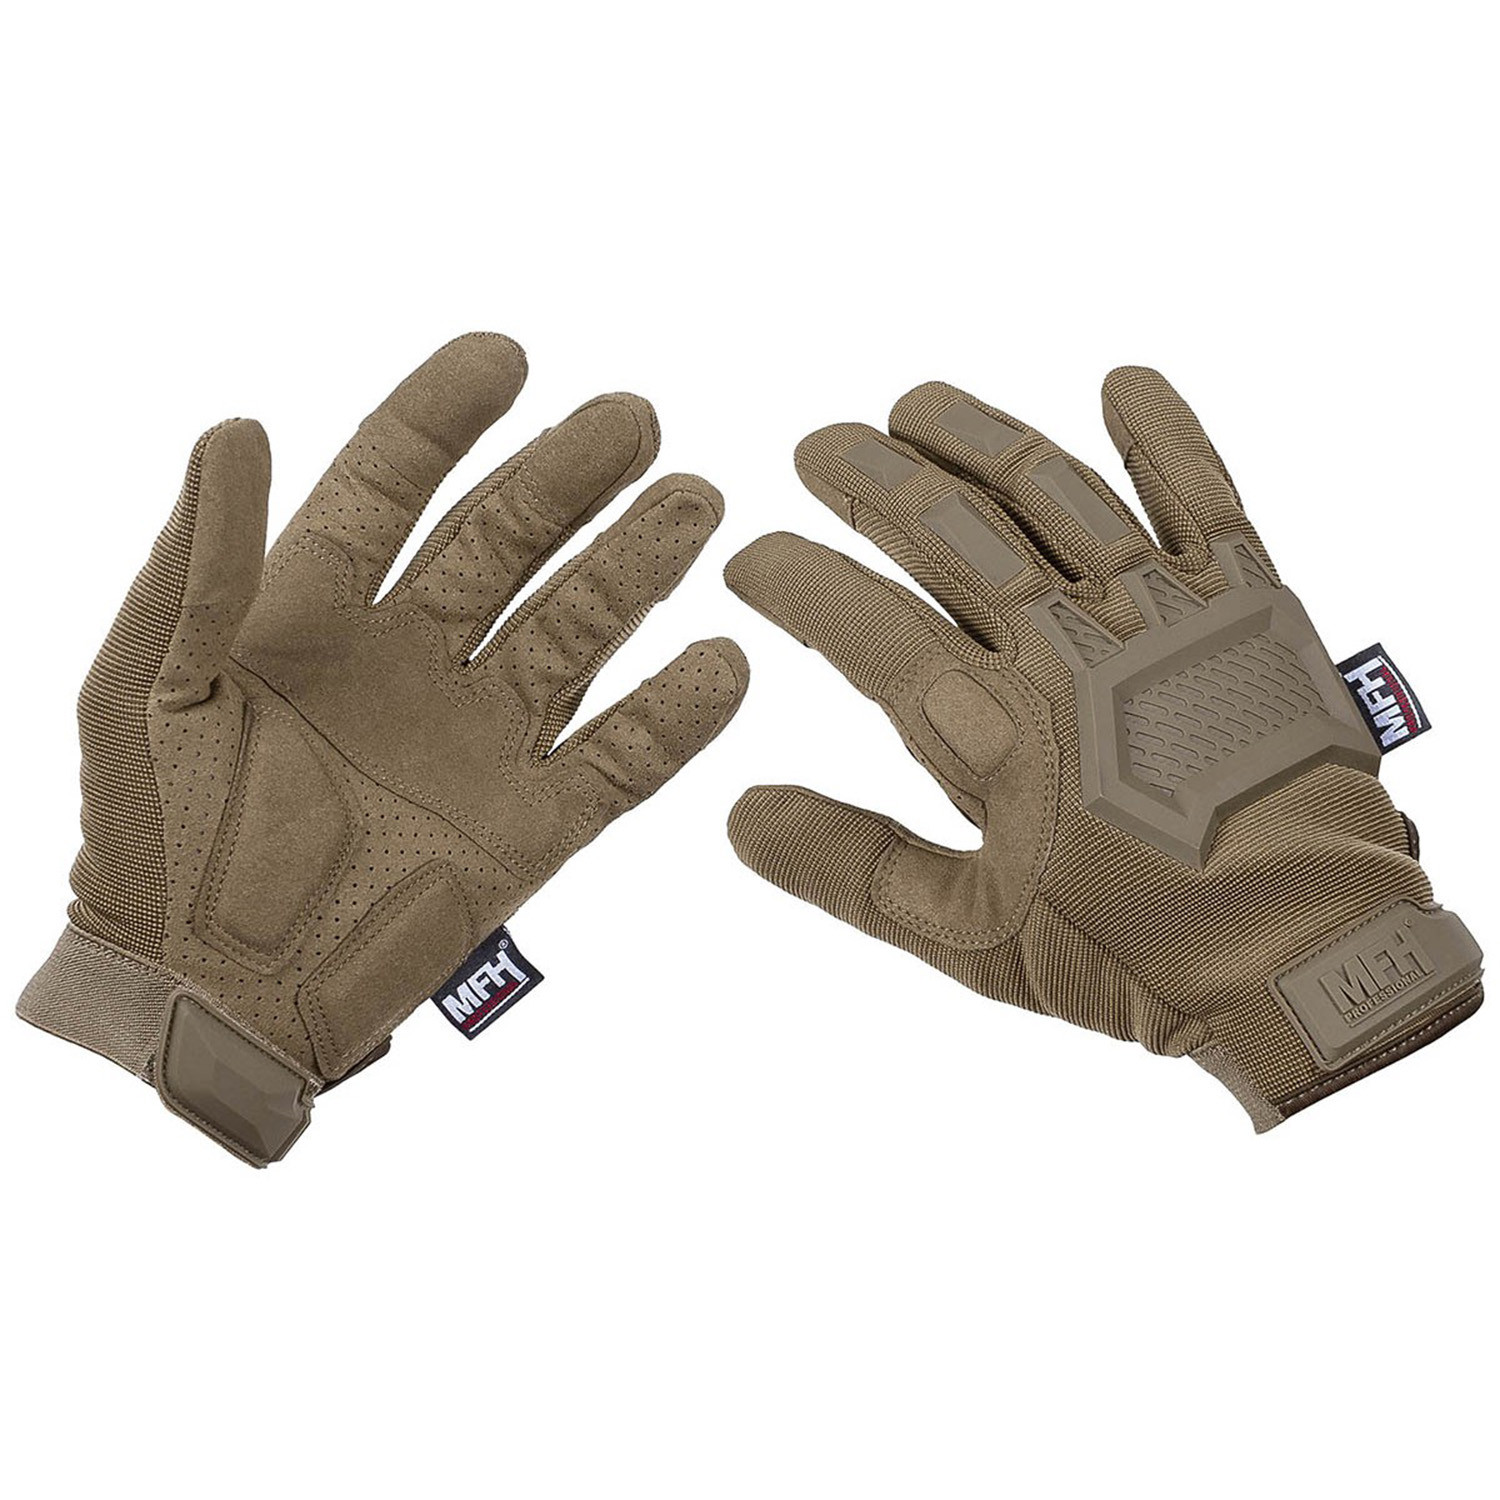 Taktische Handschuhe in Coyote Tan, Größe XL (10)